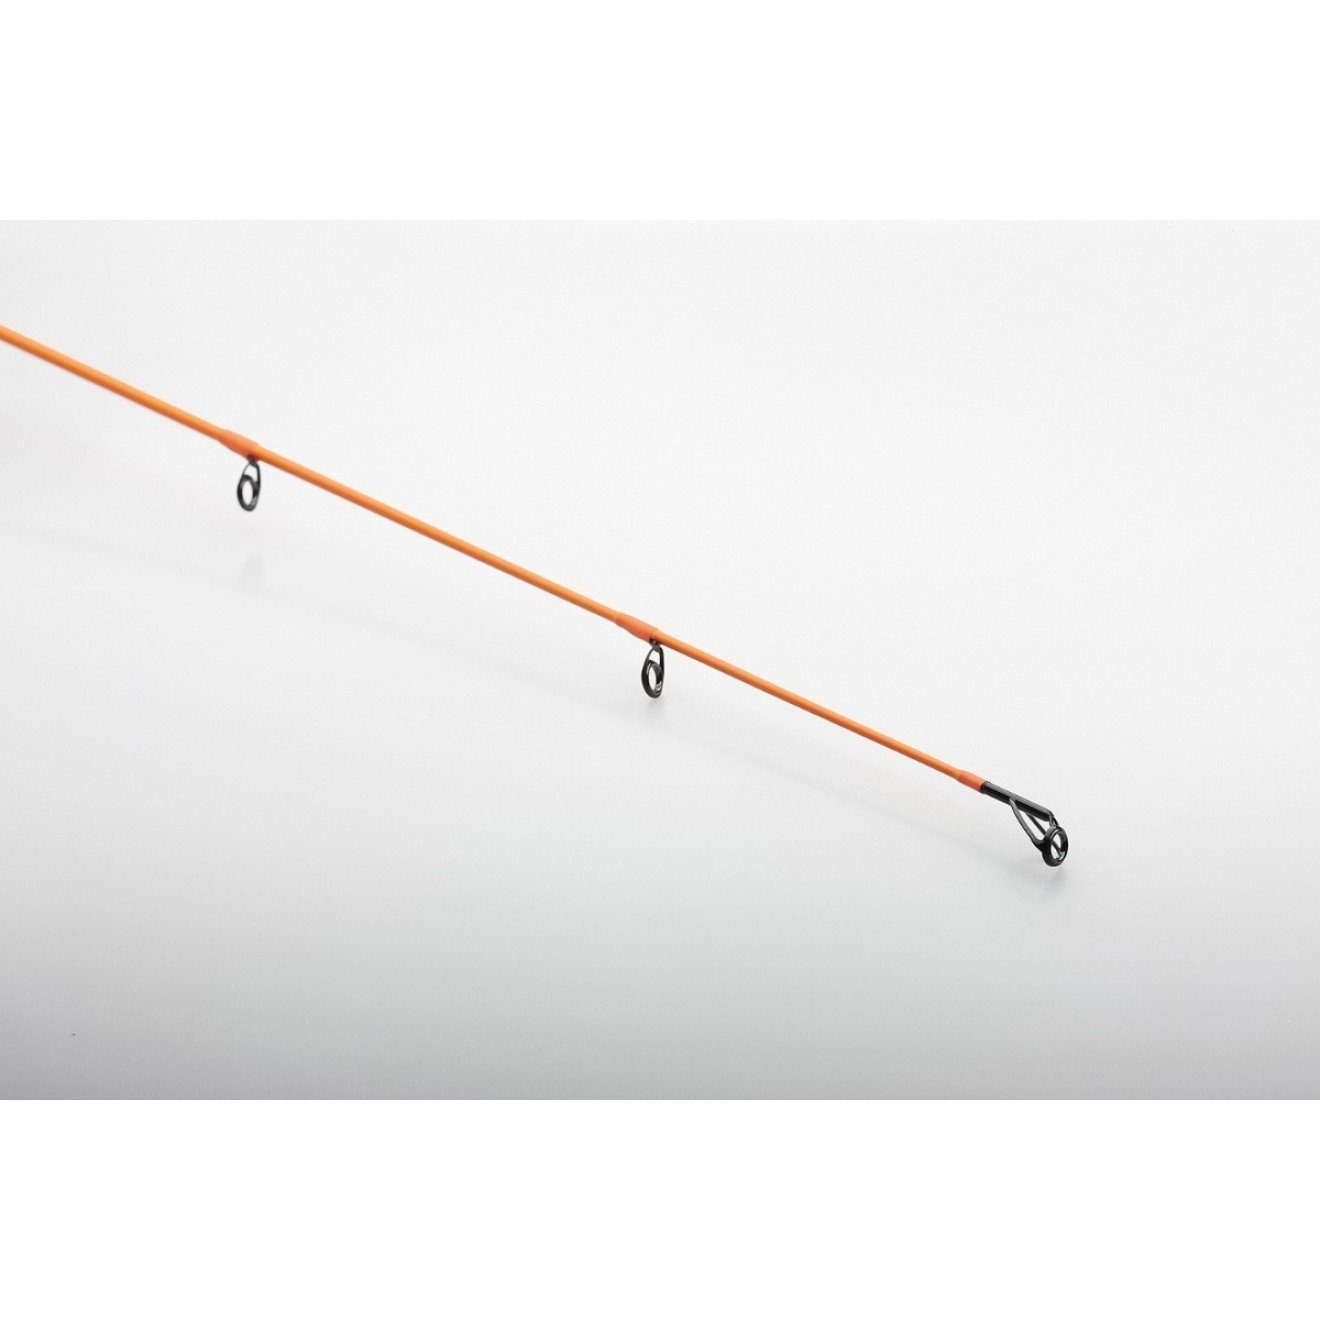 Savage Gear Spinnrute Orange Perfekt Game Rod Spin 2,21m Medium optimales WG_7-25g Angelruten, 2,13m LTD für Gefühl ein 2,69m 2,51m ausbalanciert